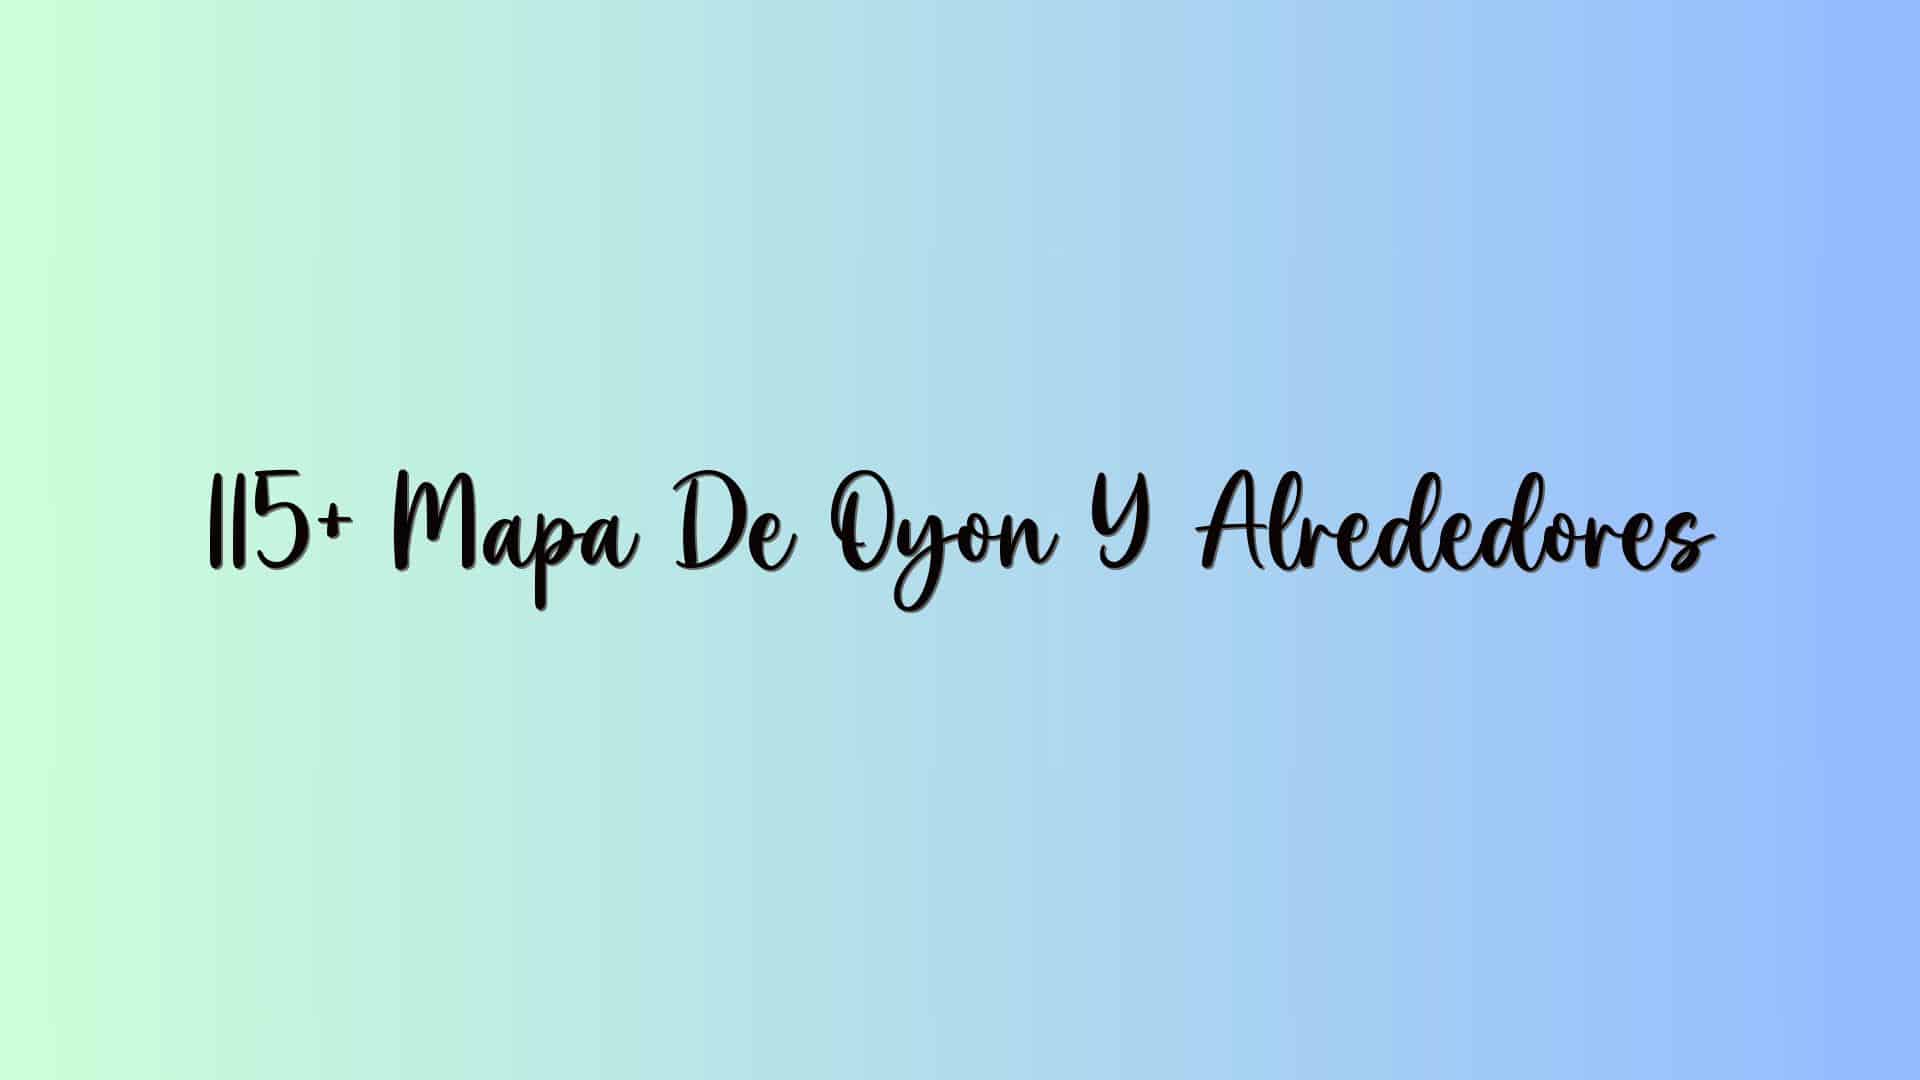 115+ Mapa De Oyon Y Alrededores